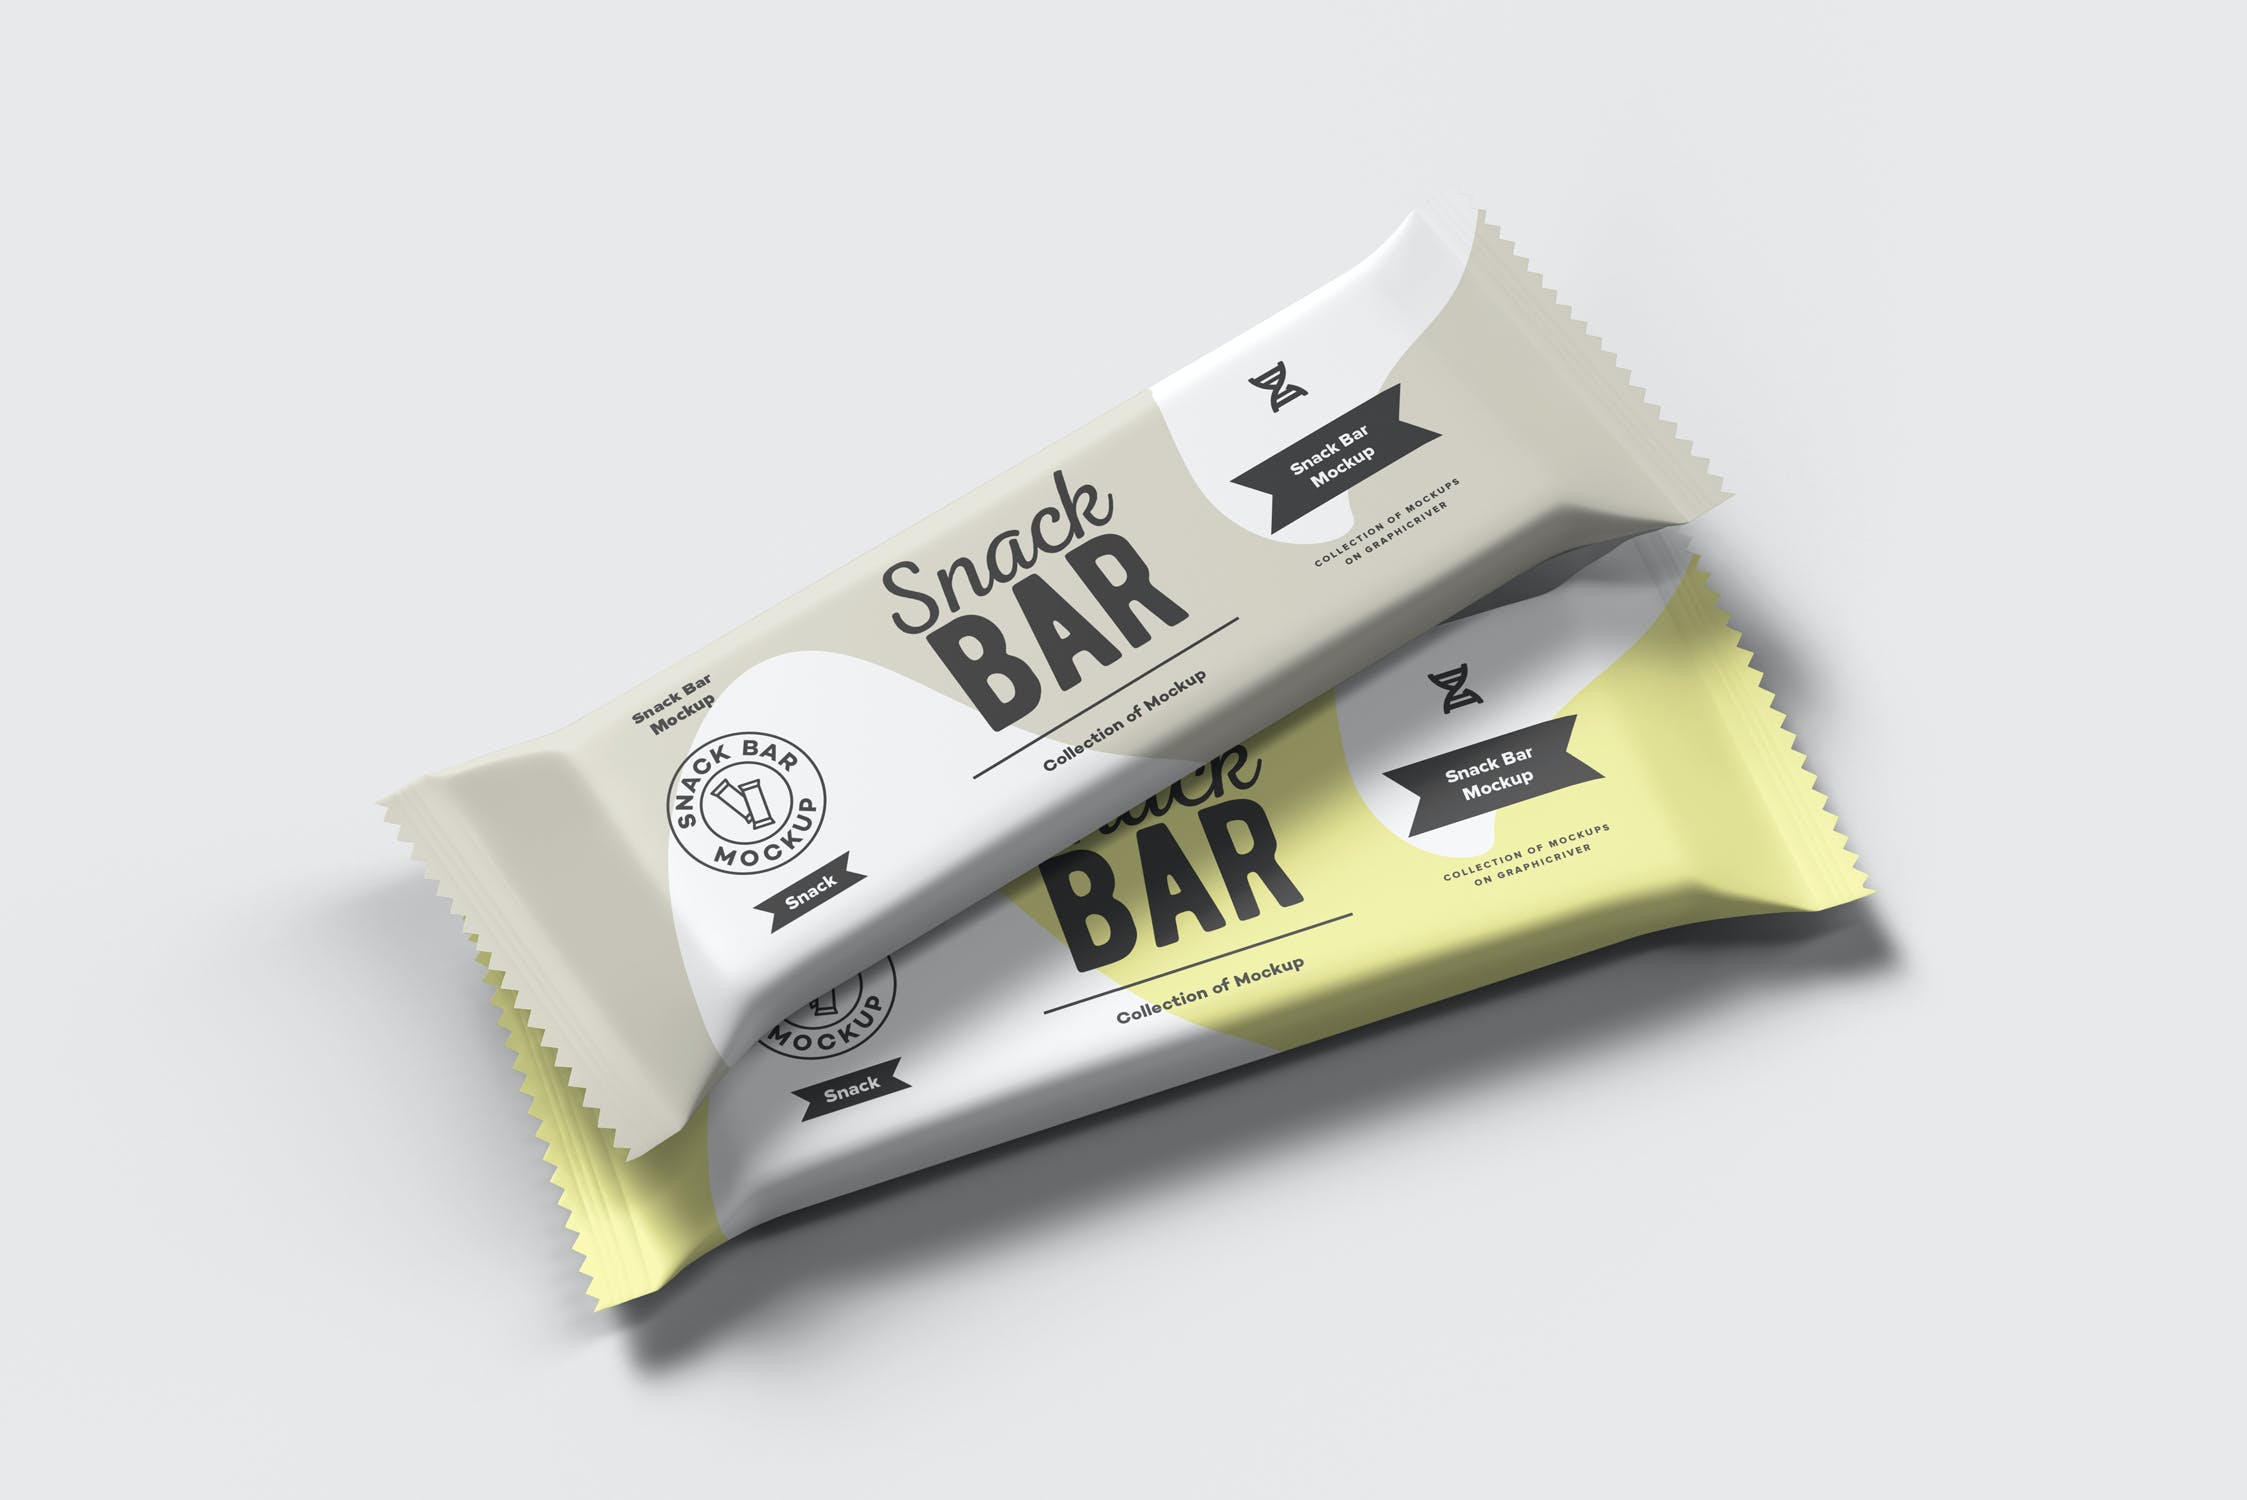 小零食包装袋设计外观预览样机 Snack Bar Mock-up设计素材模板